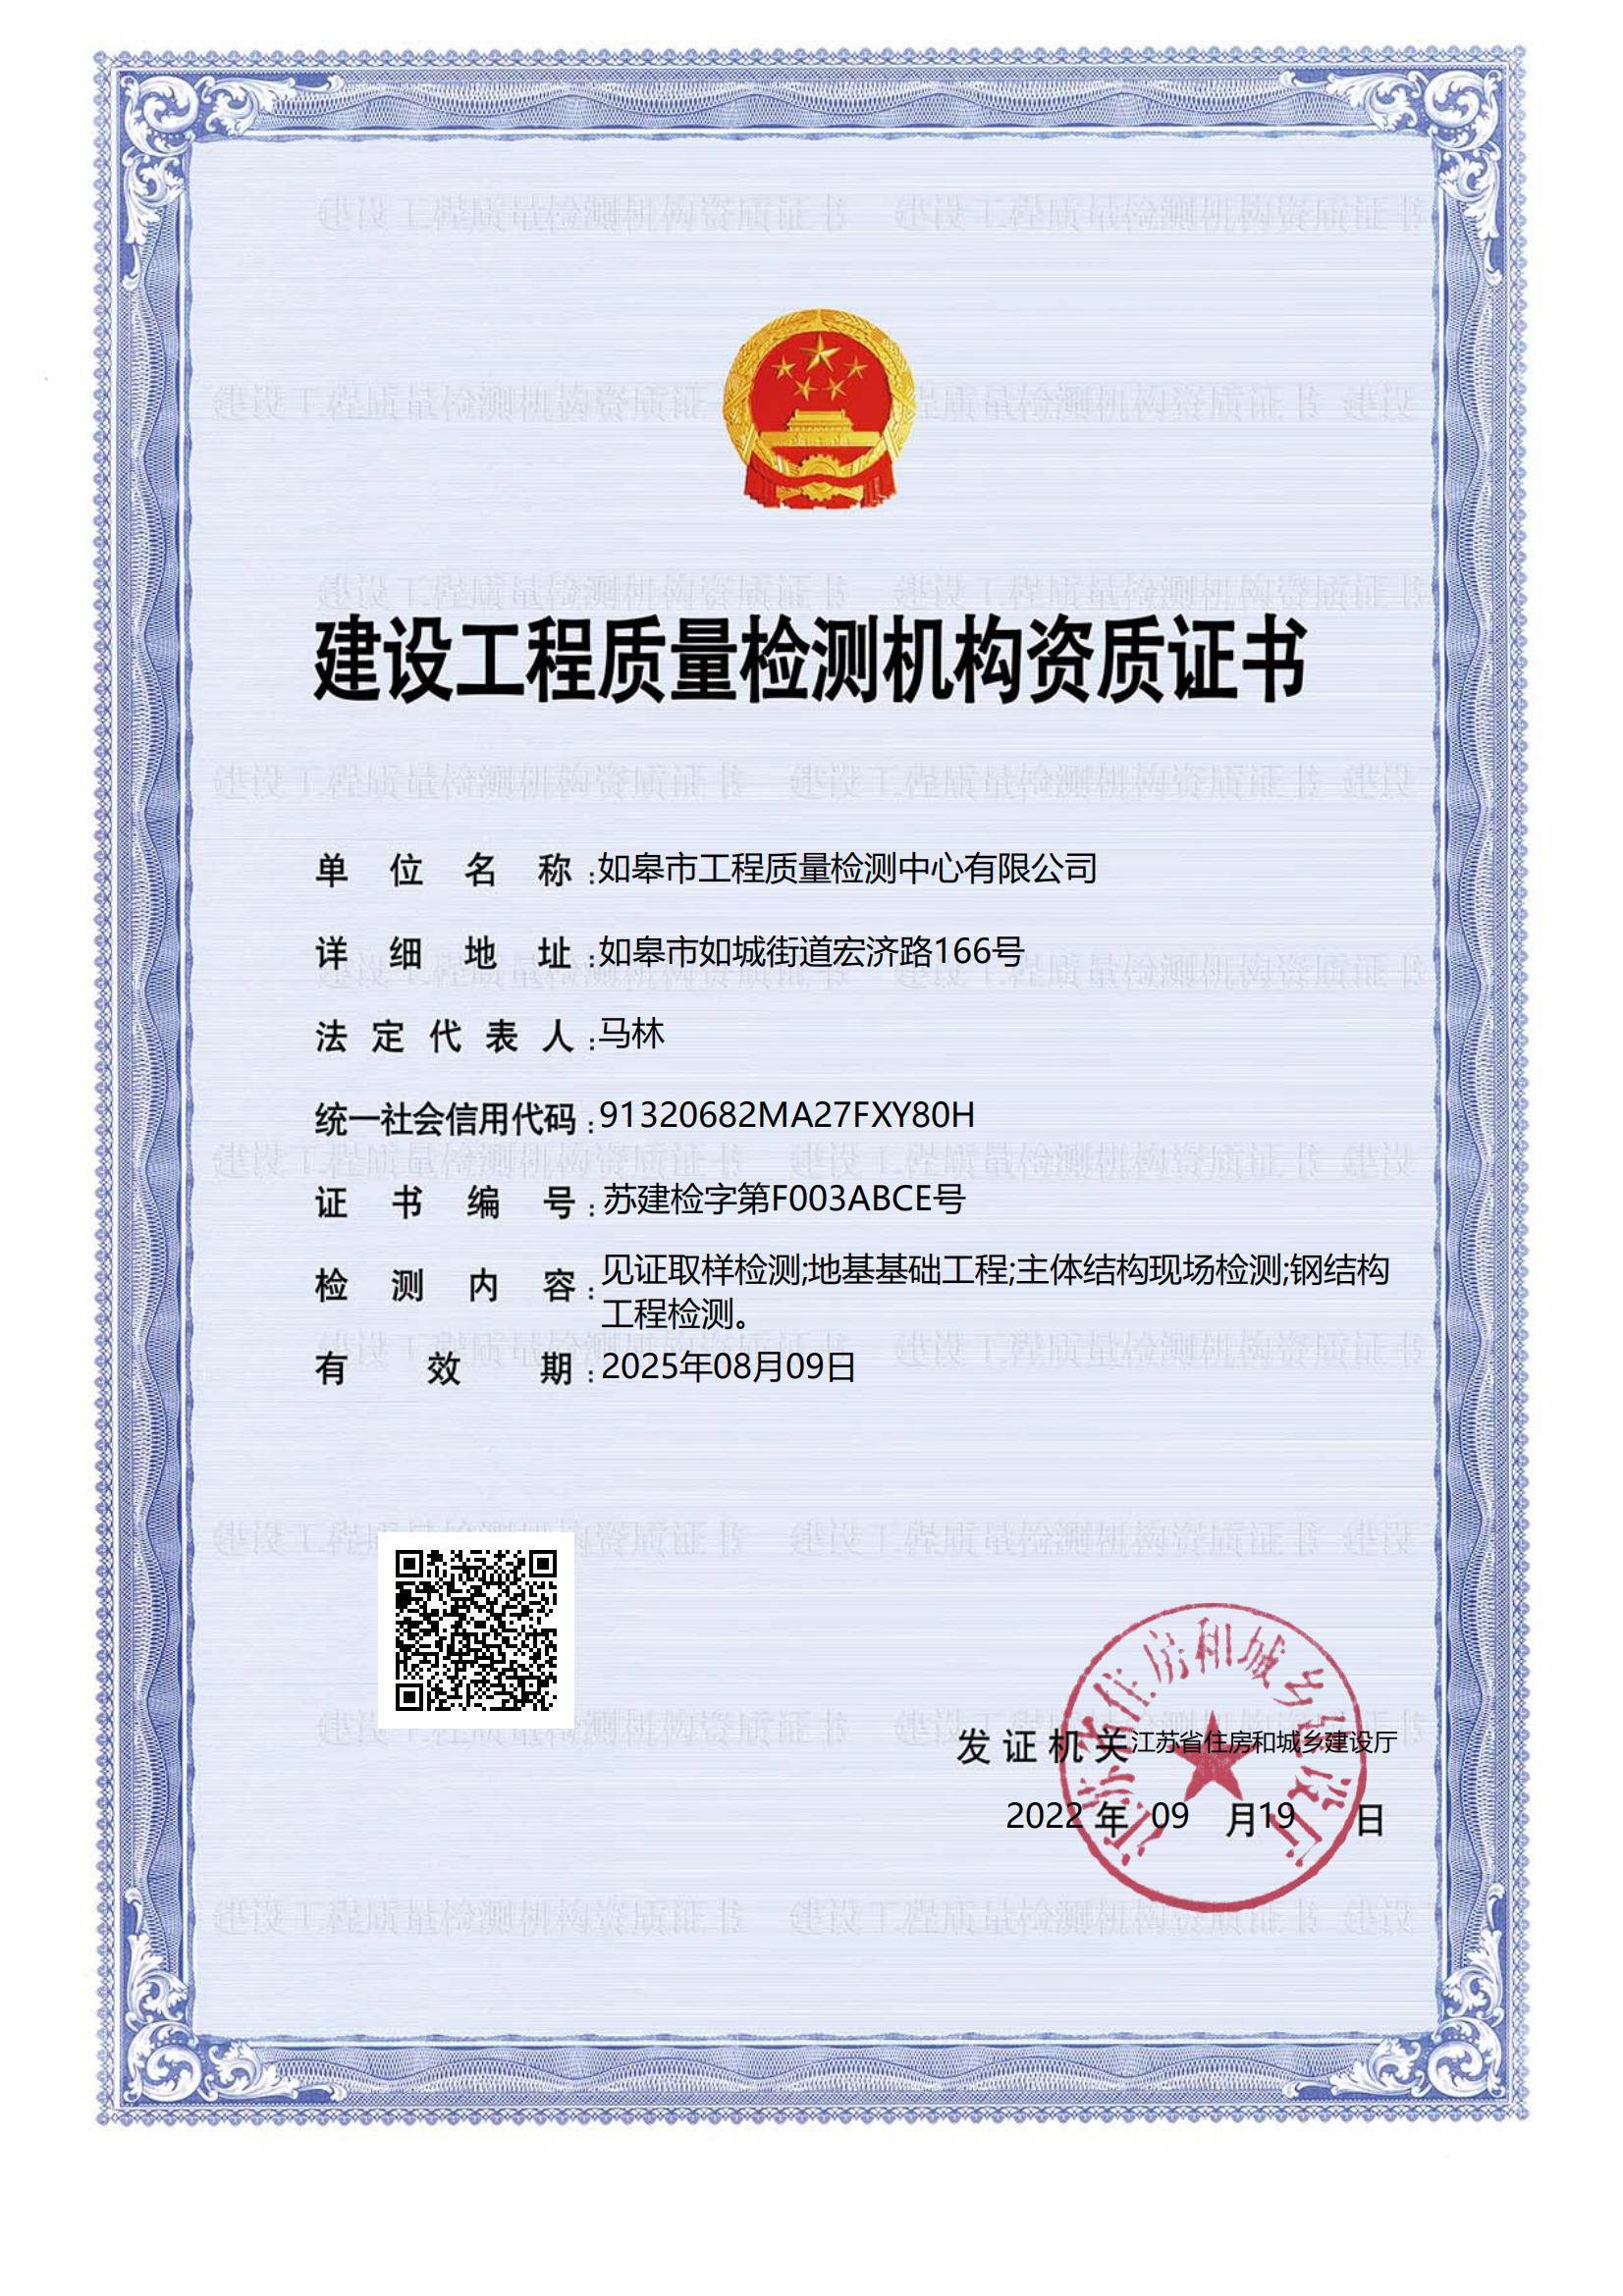 建设工程质量监测机构资质证书